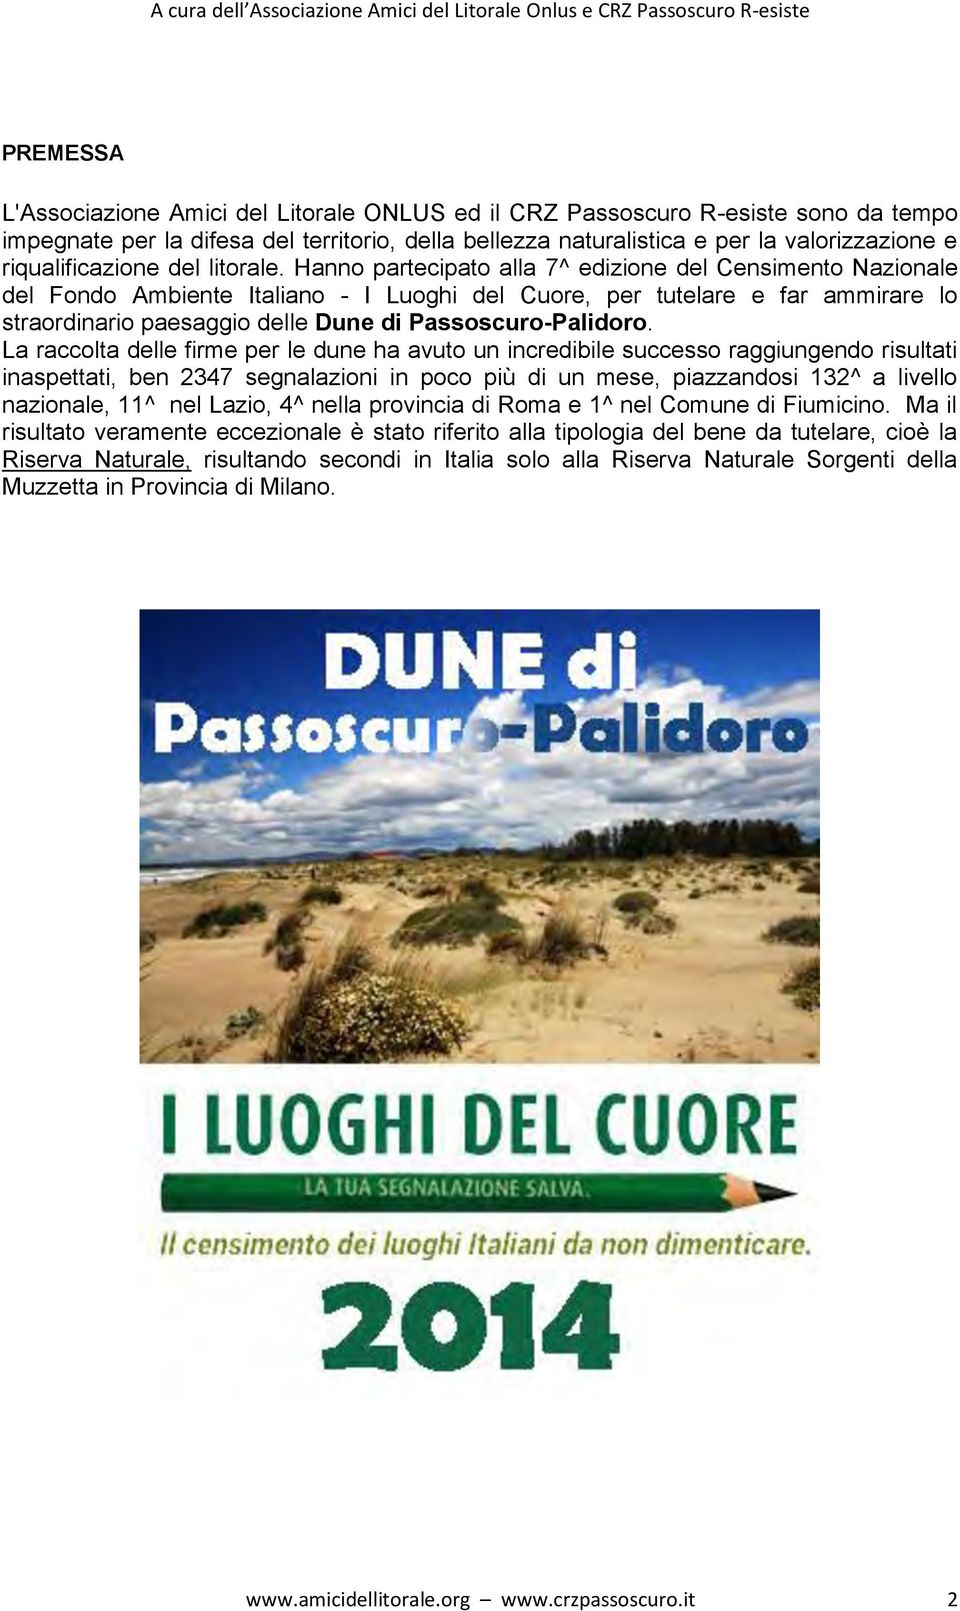 Hanno partecipato alla 7^ edizione del Censimento Nazionale del Fondo Ambiente Italiano - I Luoghi del Cuore, per tutelare e far ammirare lo straordinario paesaggio delle Dune di Passoscuro-Palidoro.